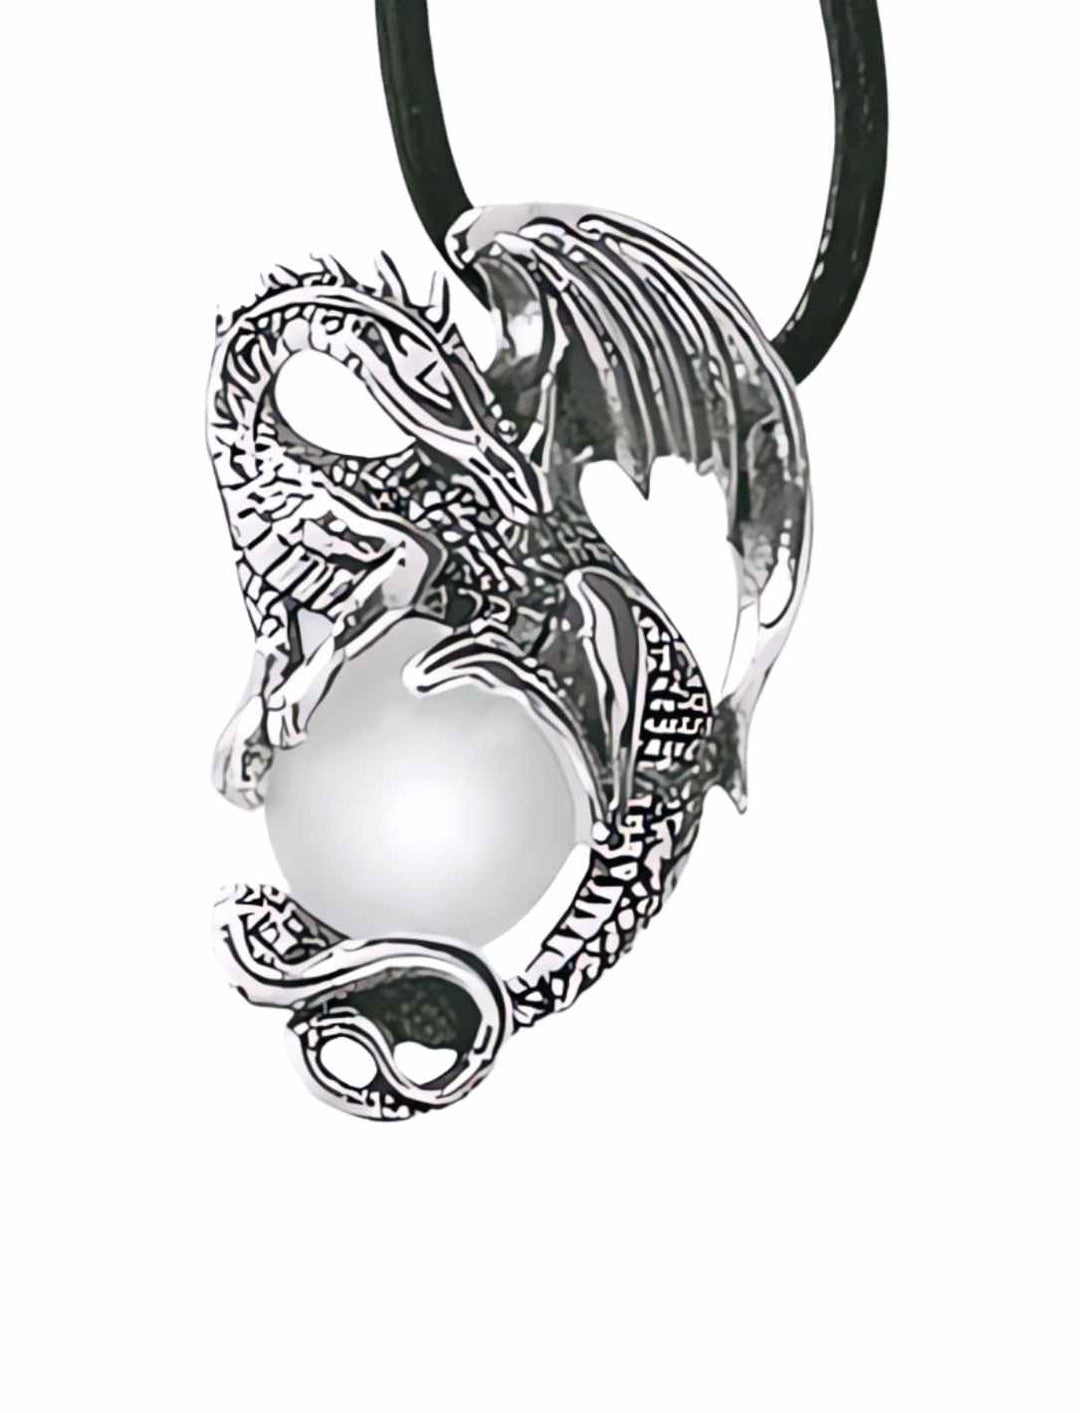 Drachenanhänger 'Wächter von Midgard' aus Sterling Silber mit Kristallkugel auf weißem Hintergrund – Runental.de